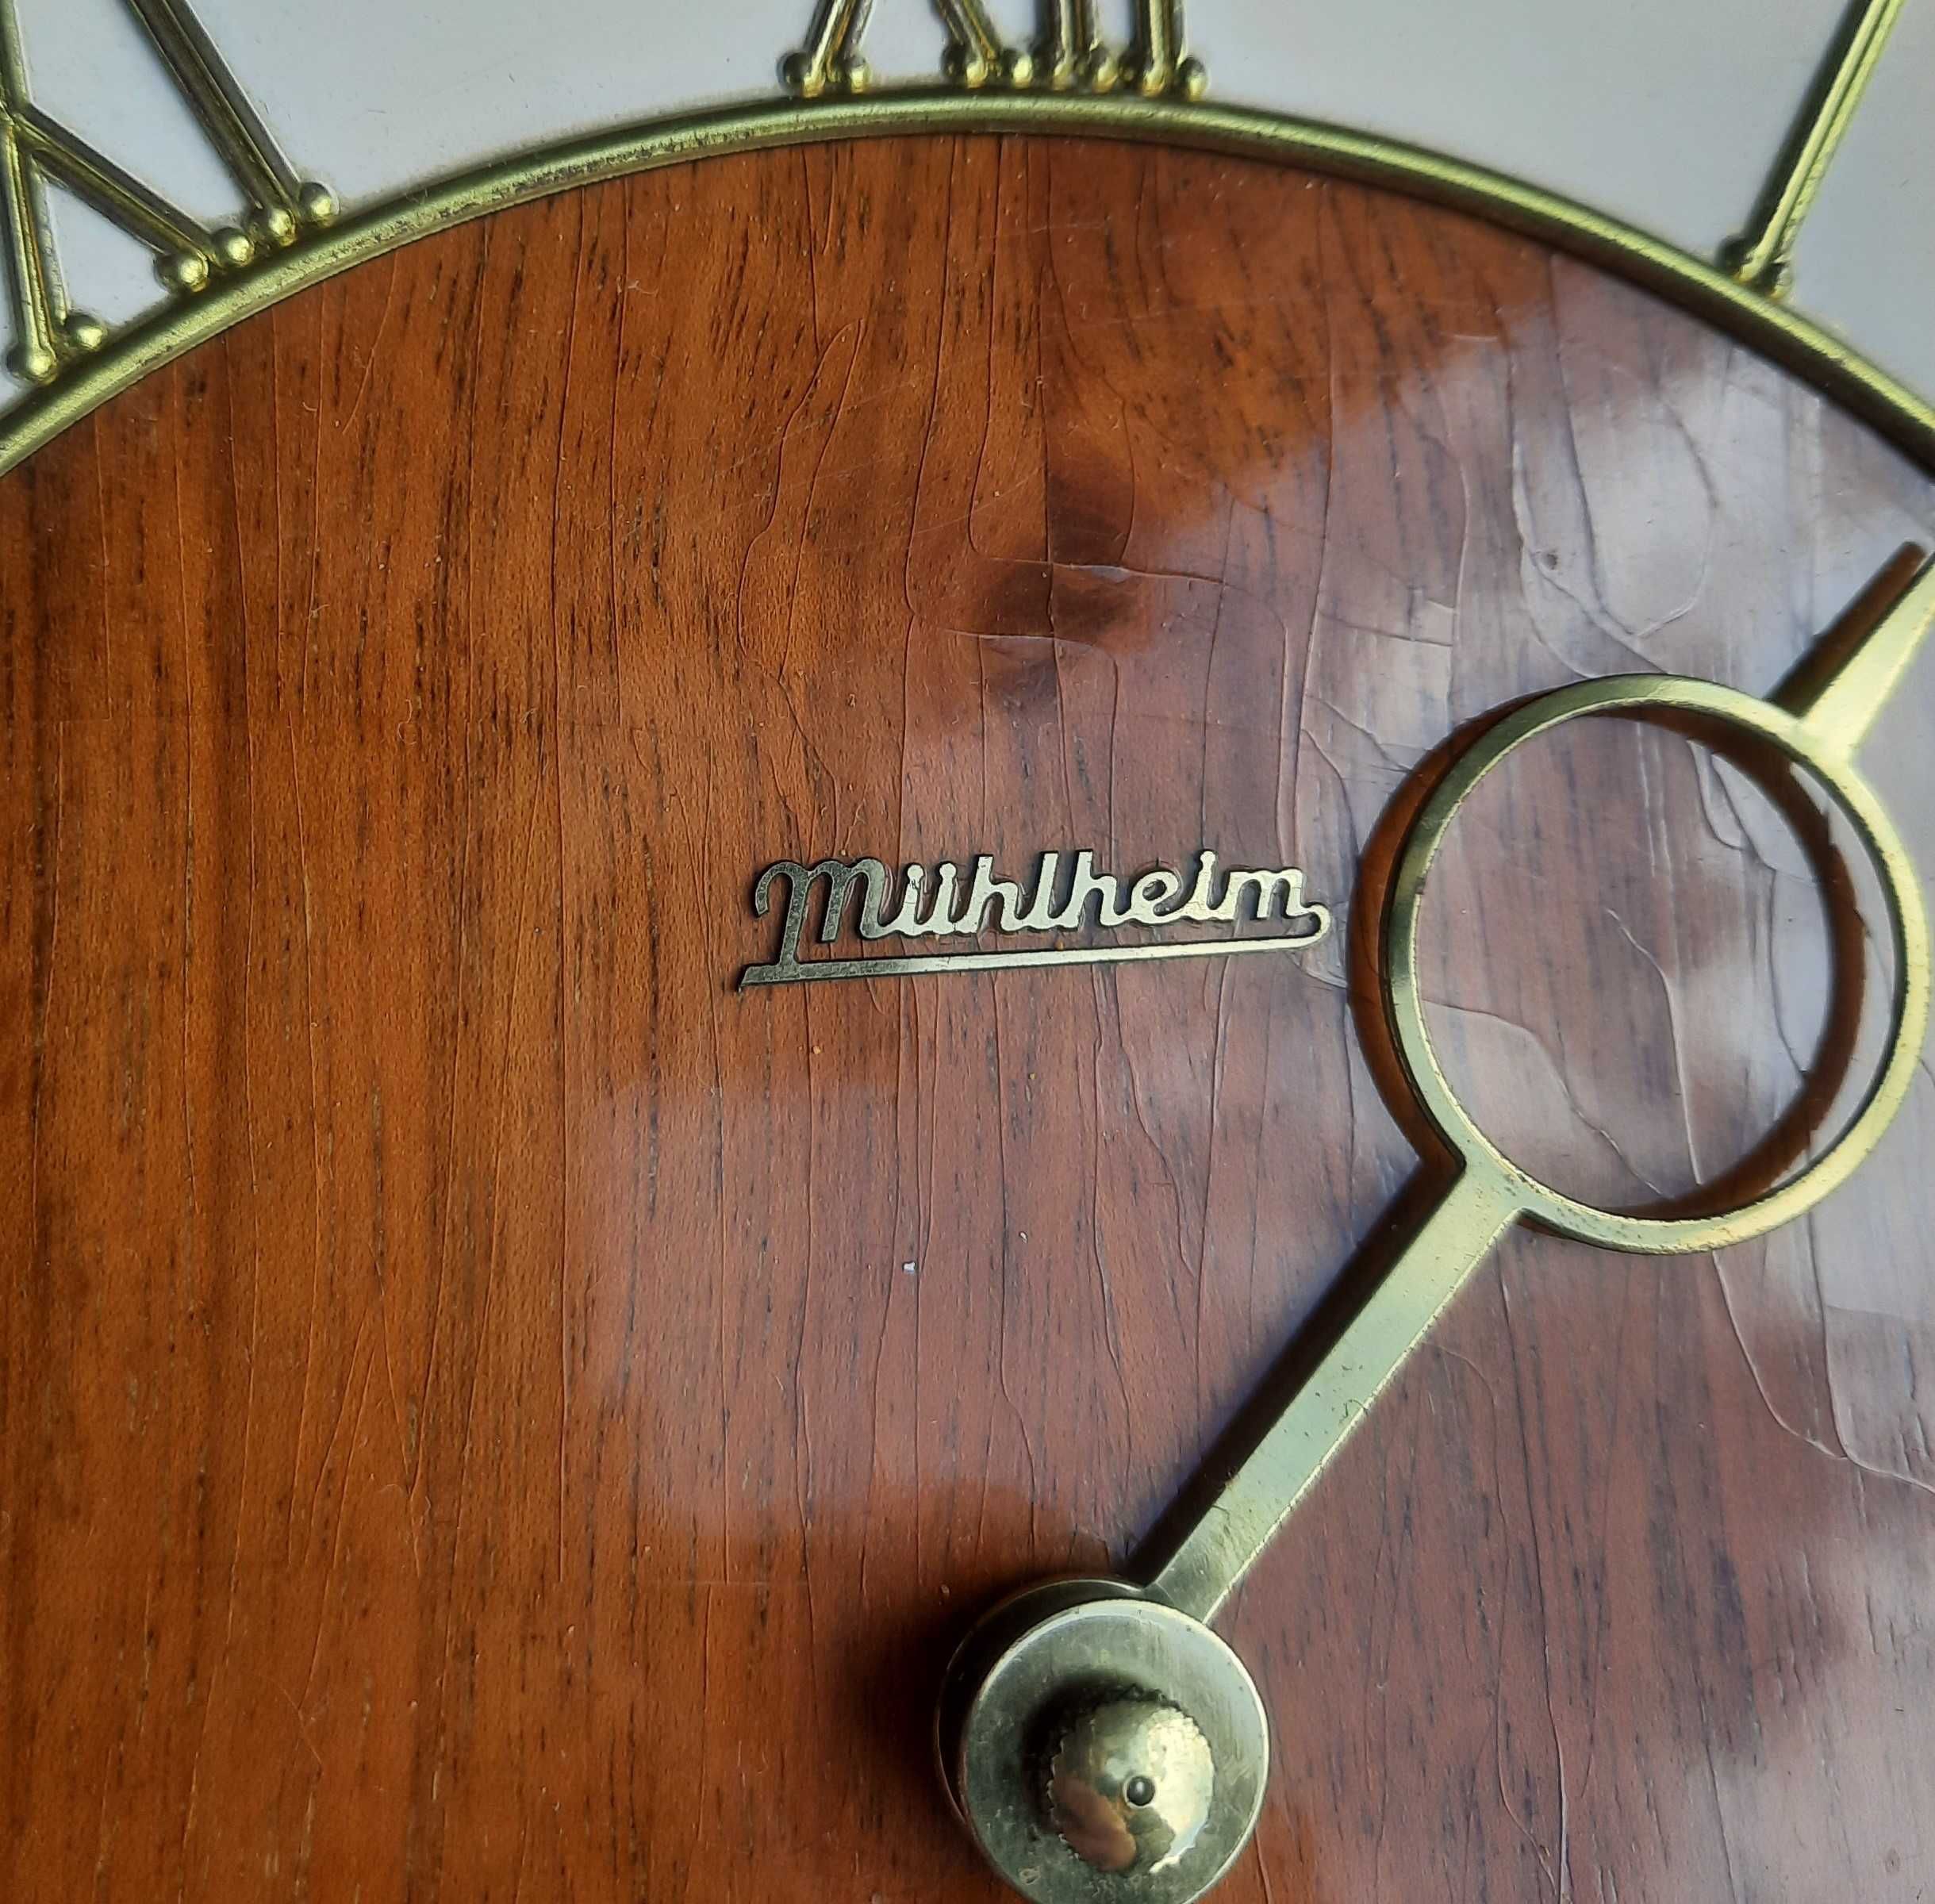 46 Zegar ścienny Muhlheim ładny sprawny chodzik